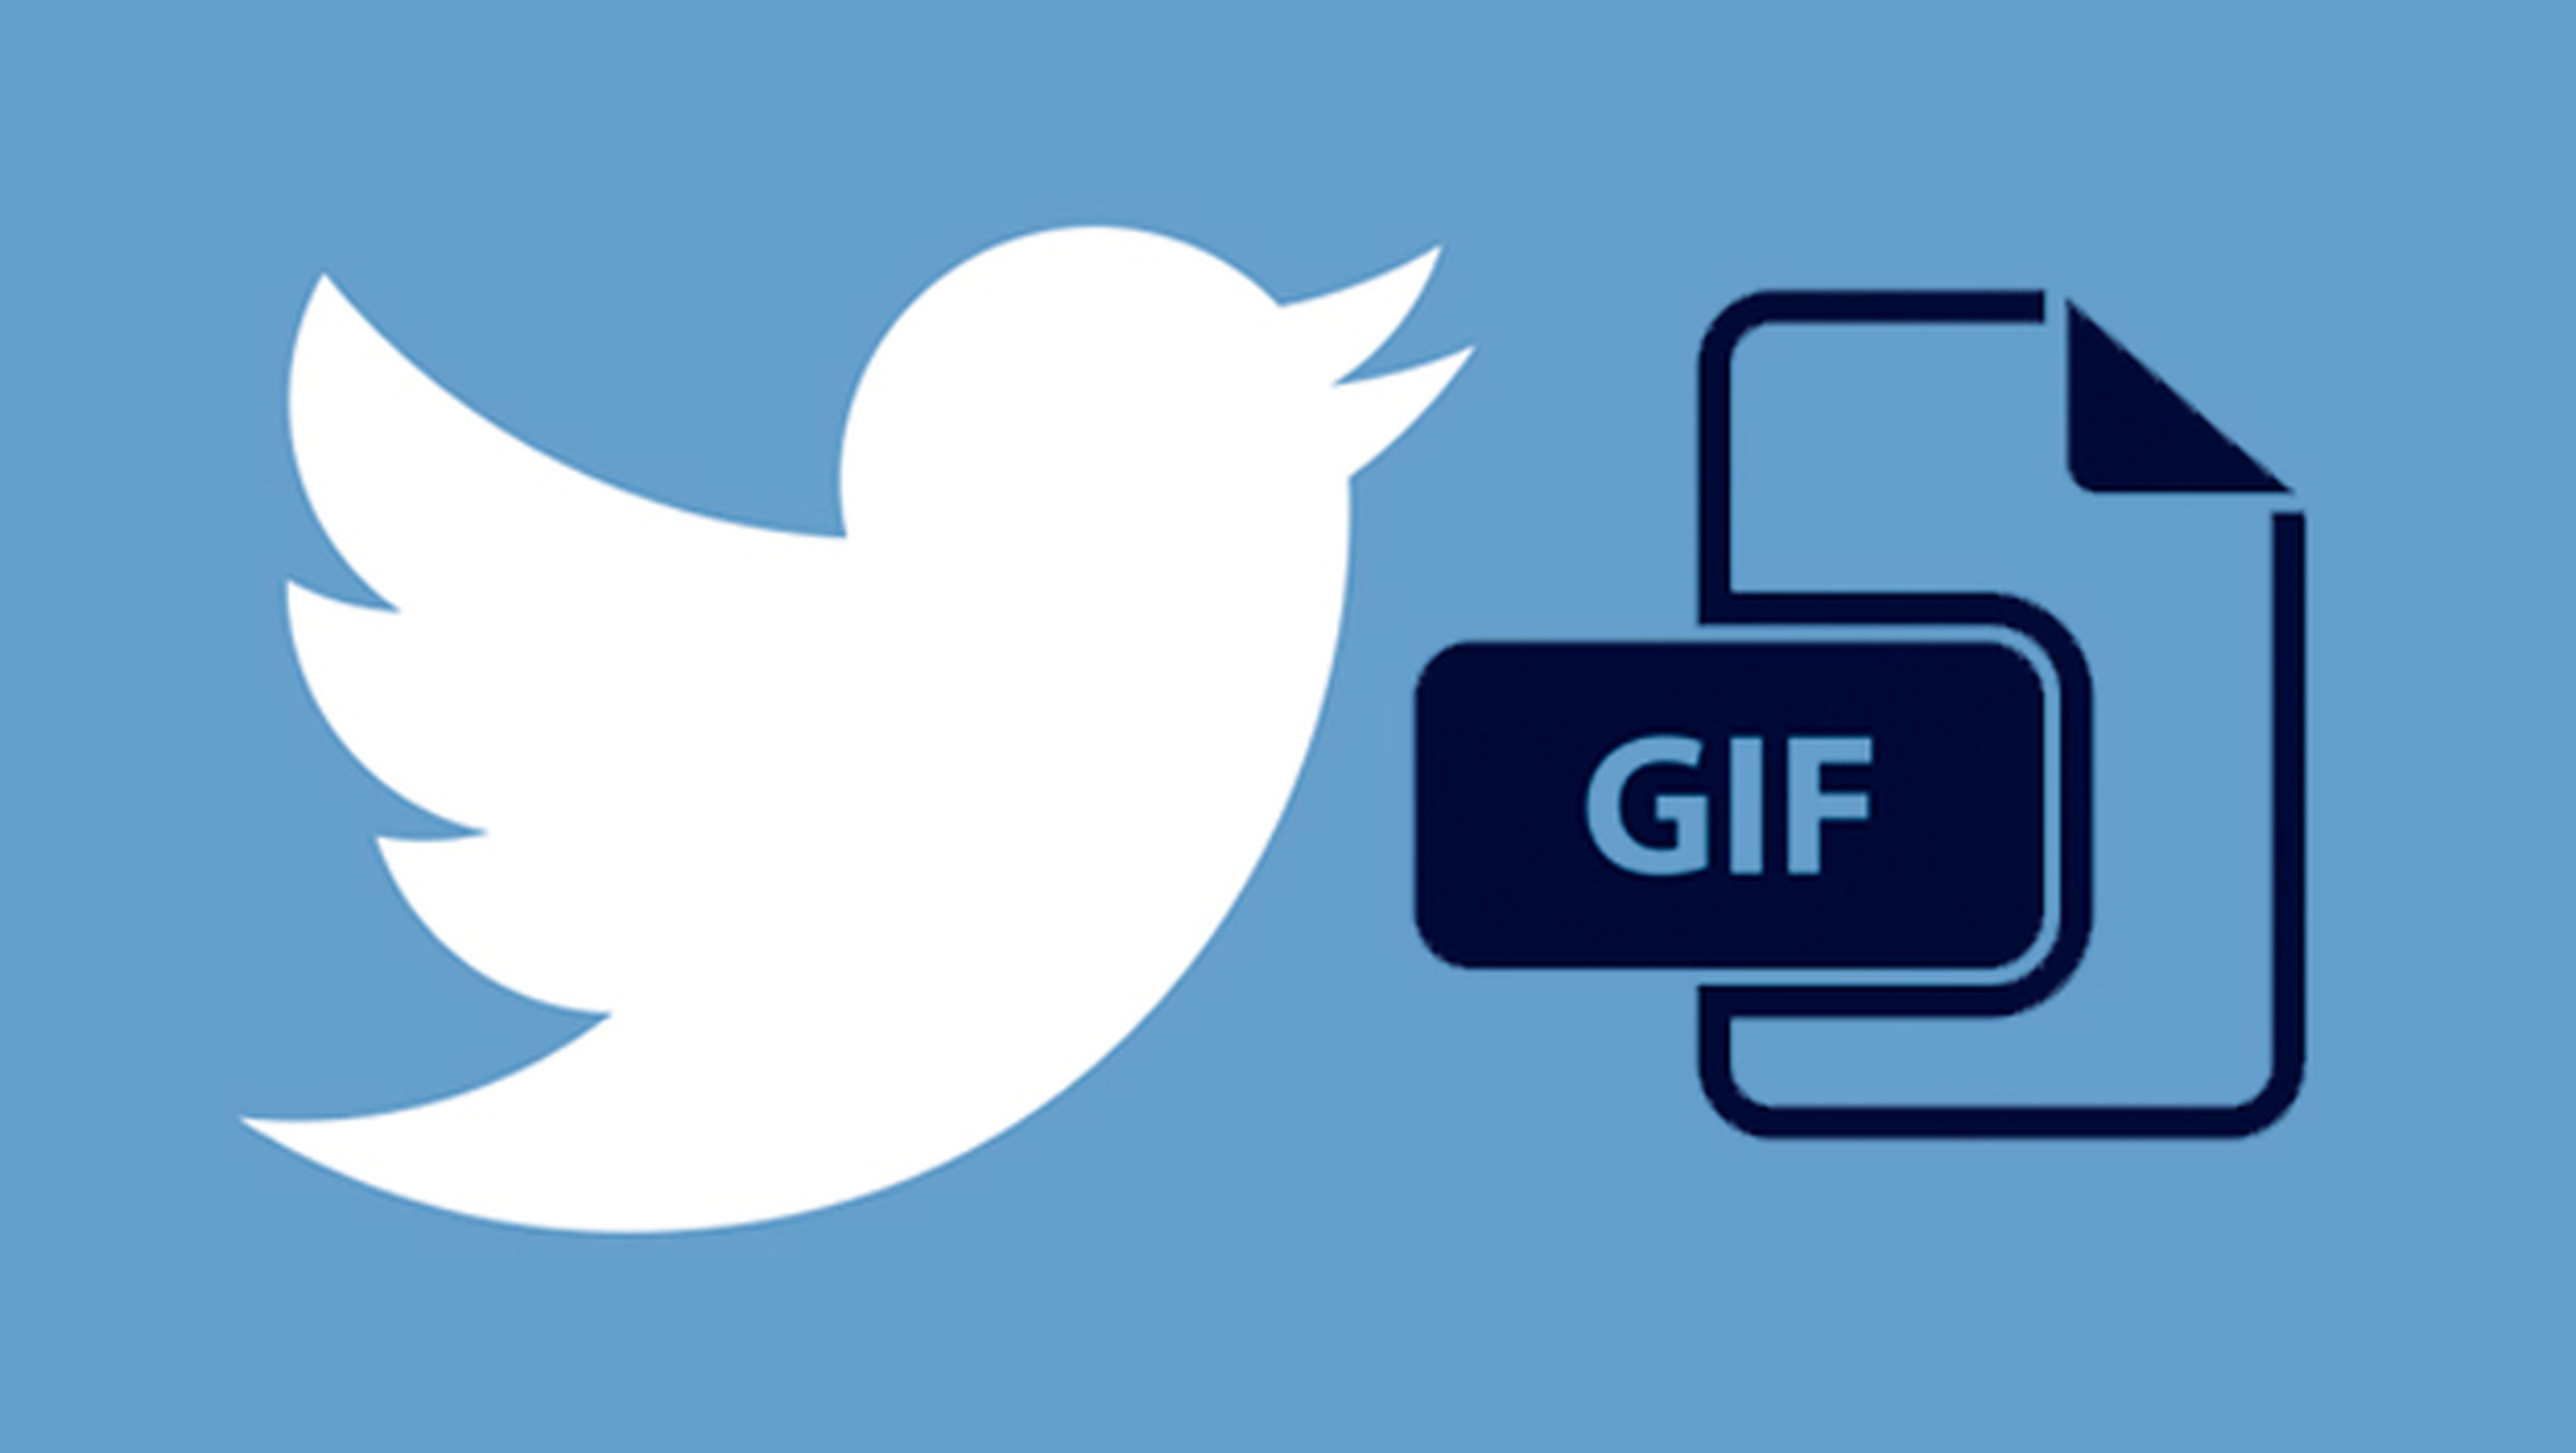 Nuevo botón en Twitter para GIF